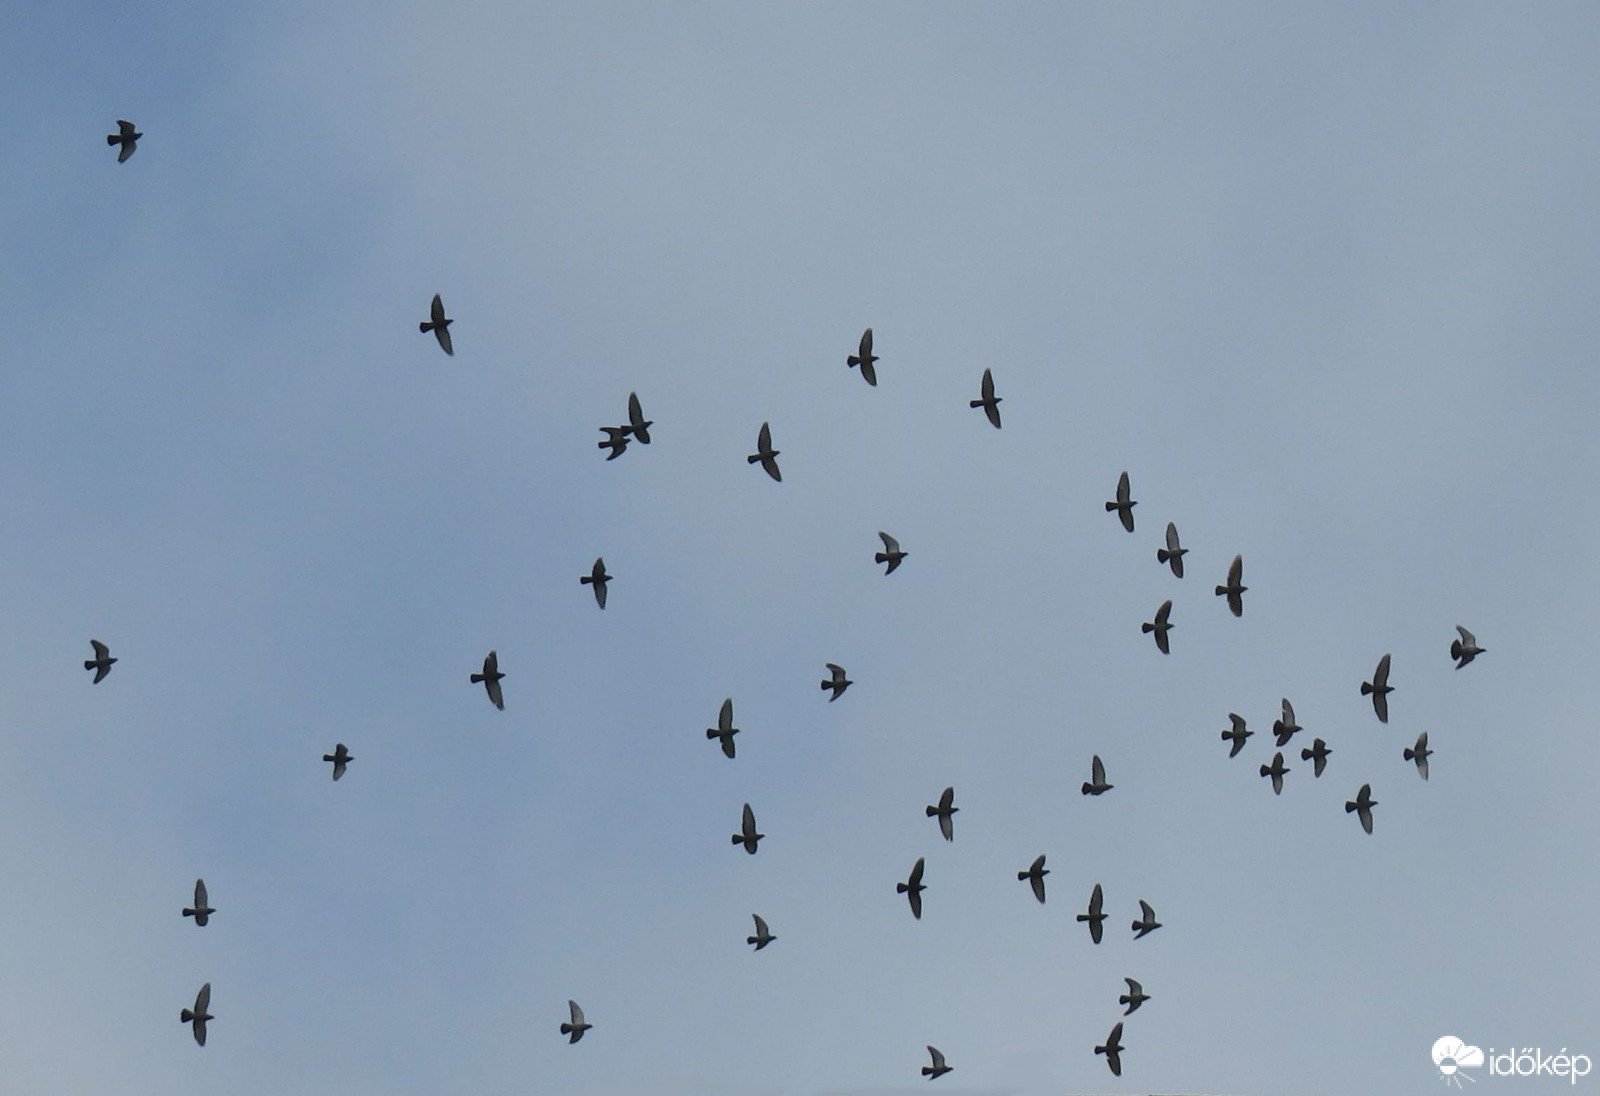 Csapatostul repülnek a galambok a szép időben